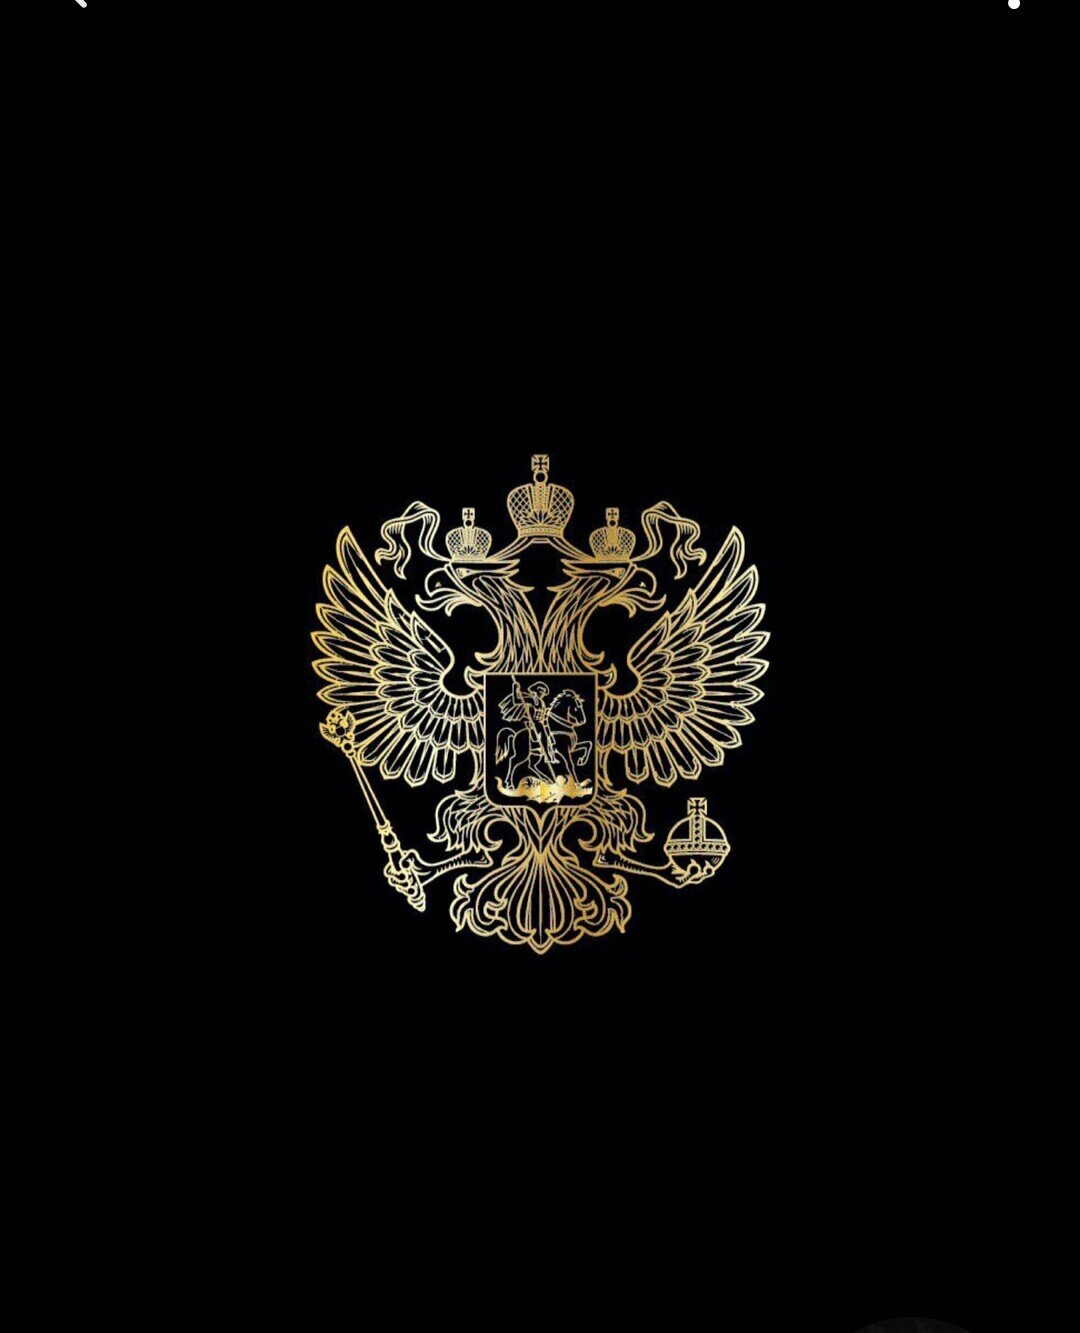 фото герба россии опер